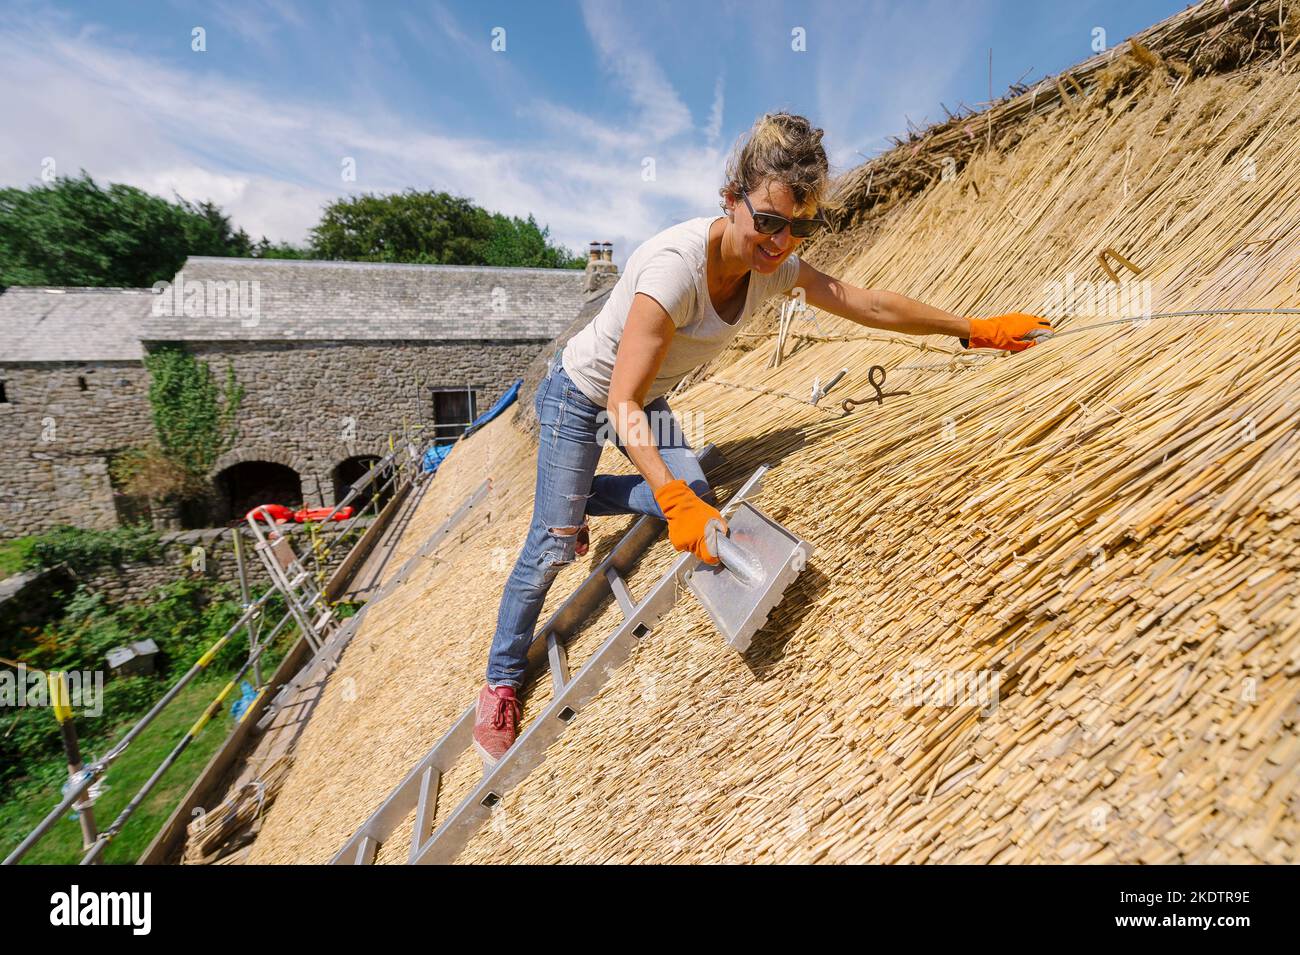 Foto di Jim Wileman - Jane Rush, nella Lower Jurston Farm, vicino a Chagford, Devon. Jane sta strattando il suo tetto. Foto Stock